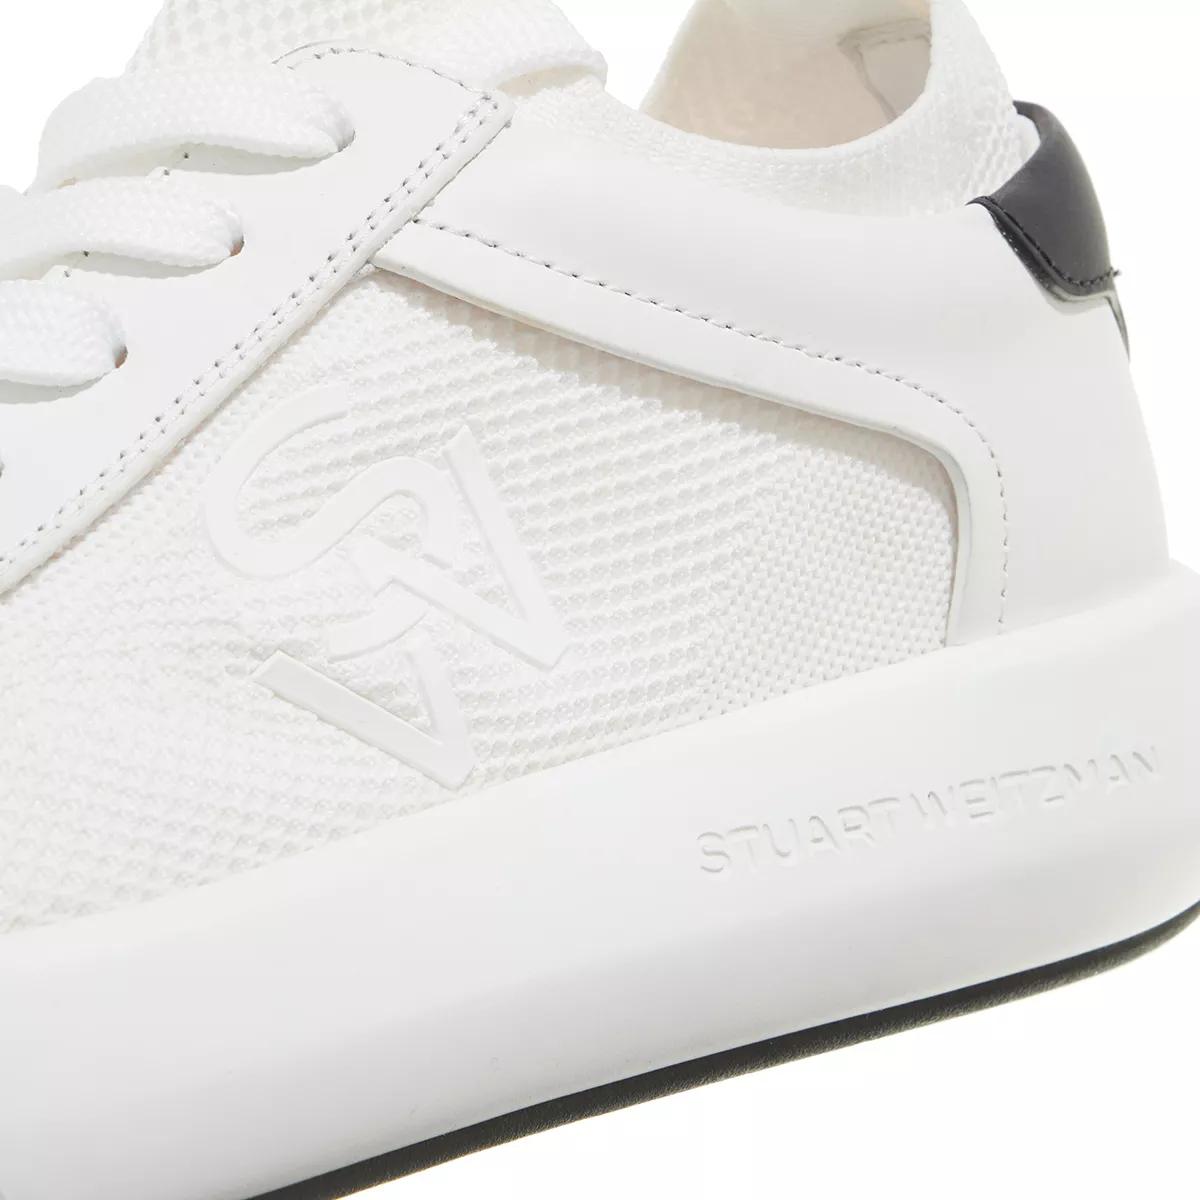 Stuart Weitzman Sneakers - 5050 PRO - Gr. 38 (EU) - in Weiß - für Damen von Stuart Weitzman